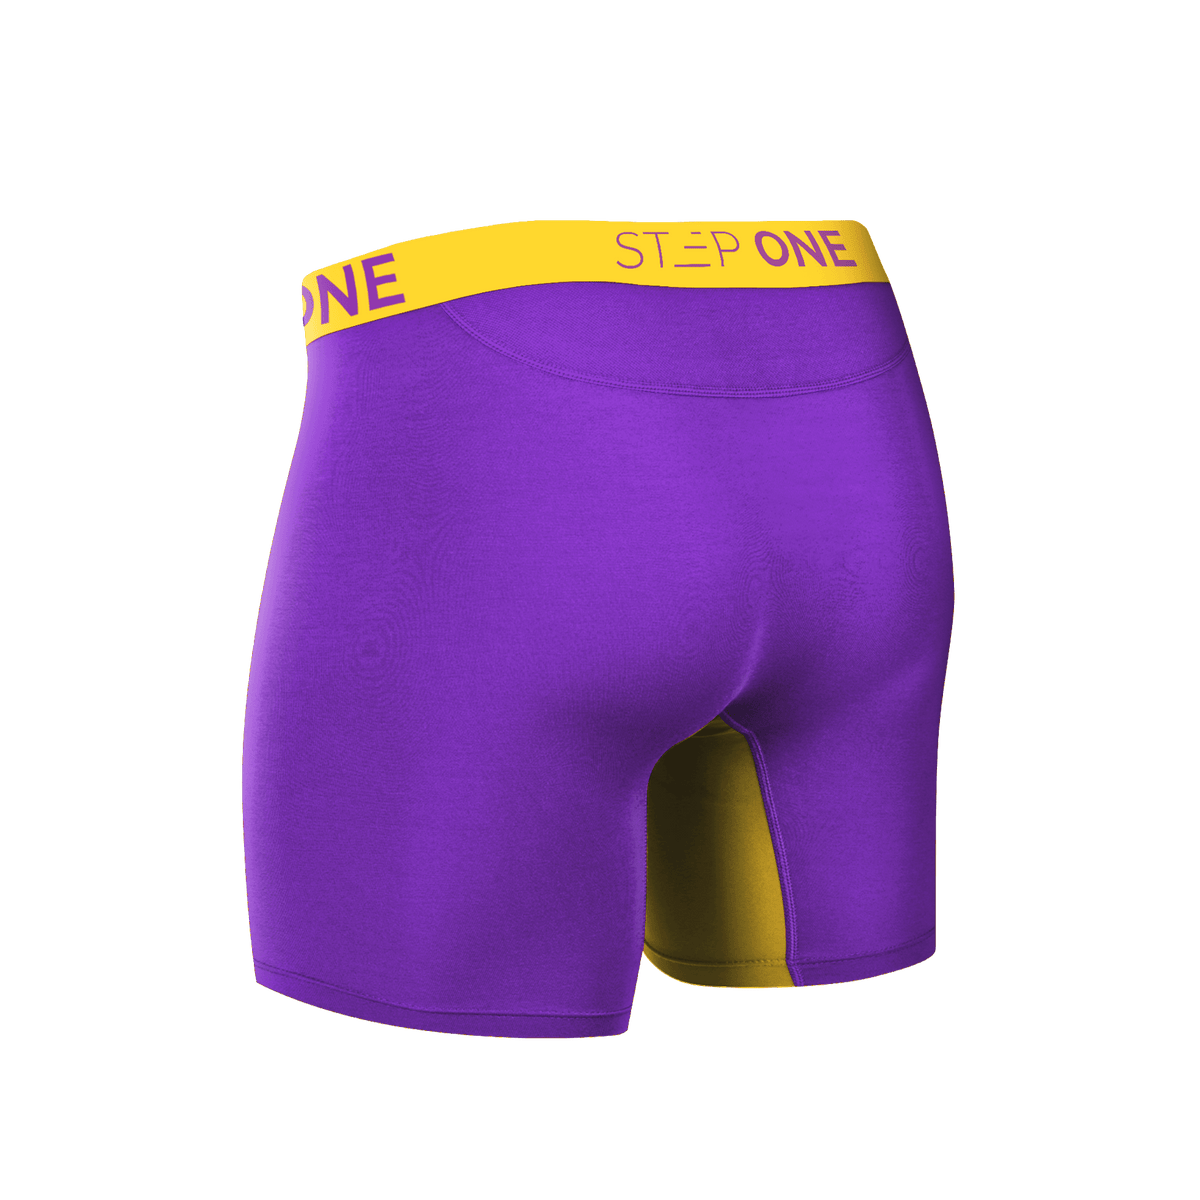 Boxer Brief - Honeycombs | Step One Mens Underwear